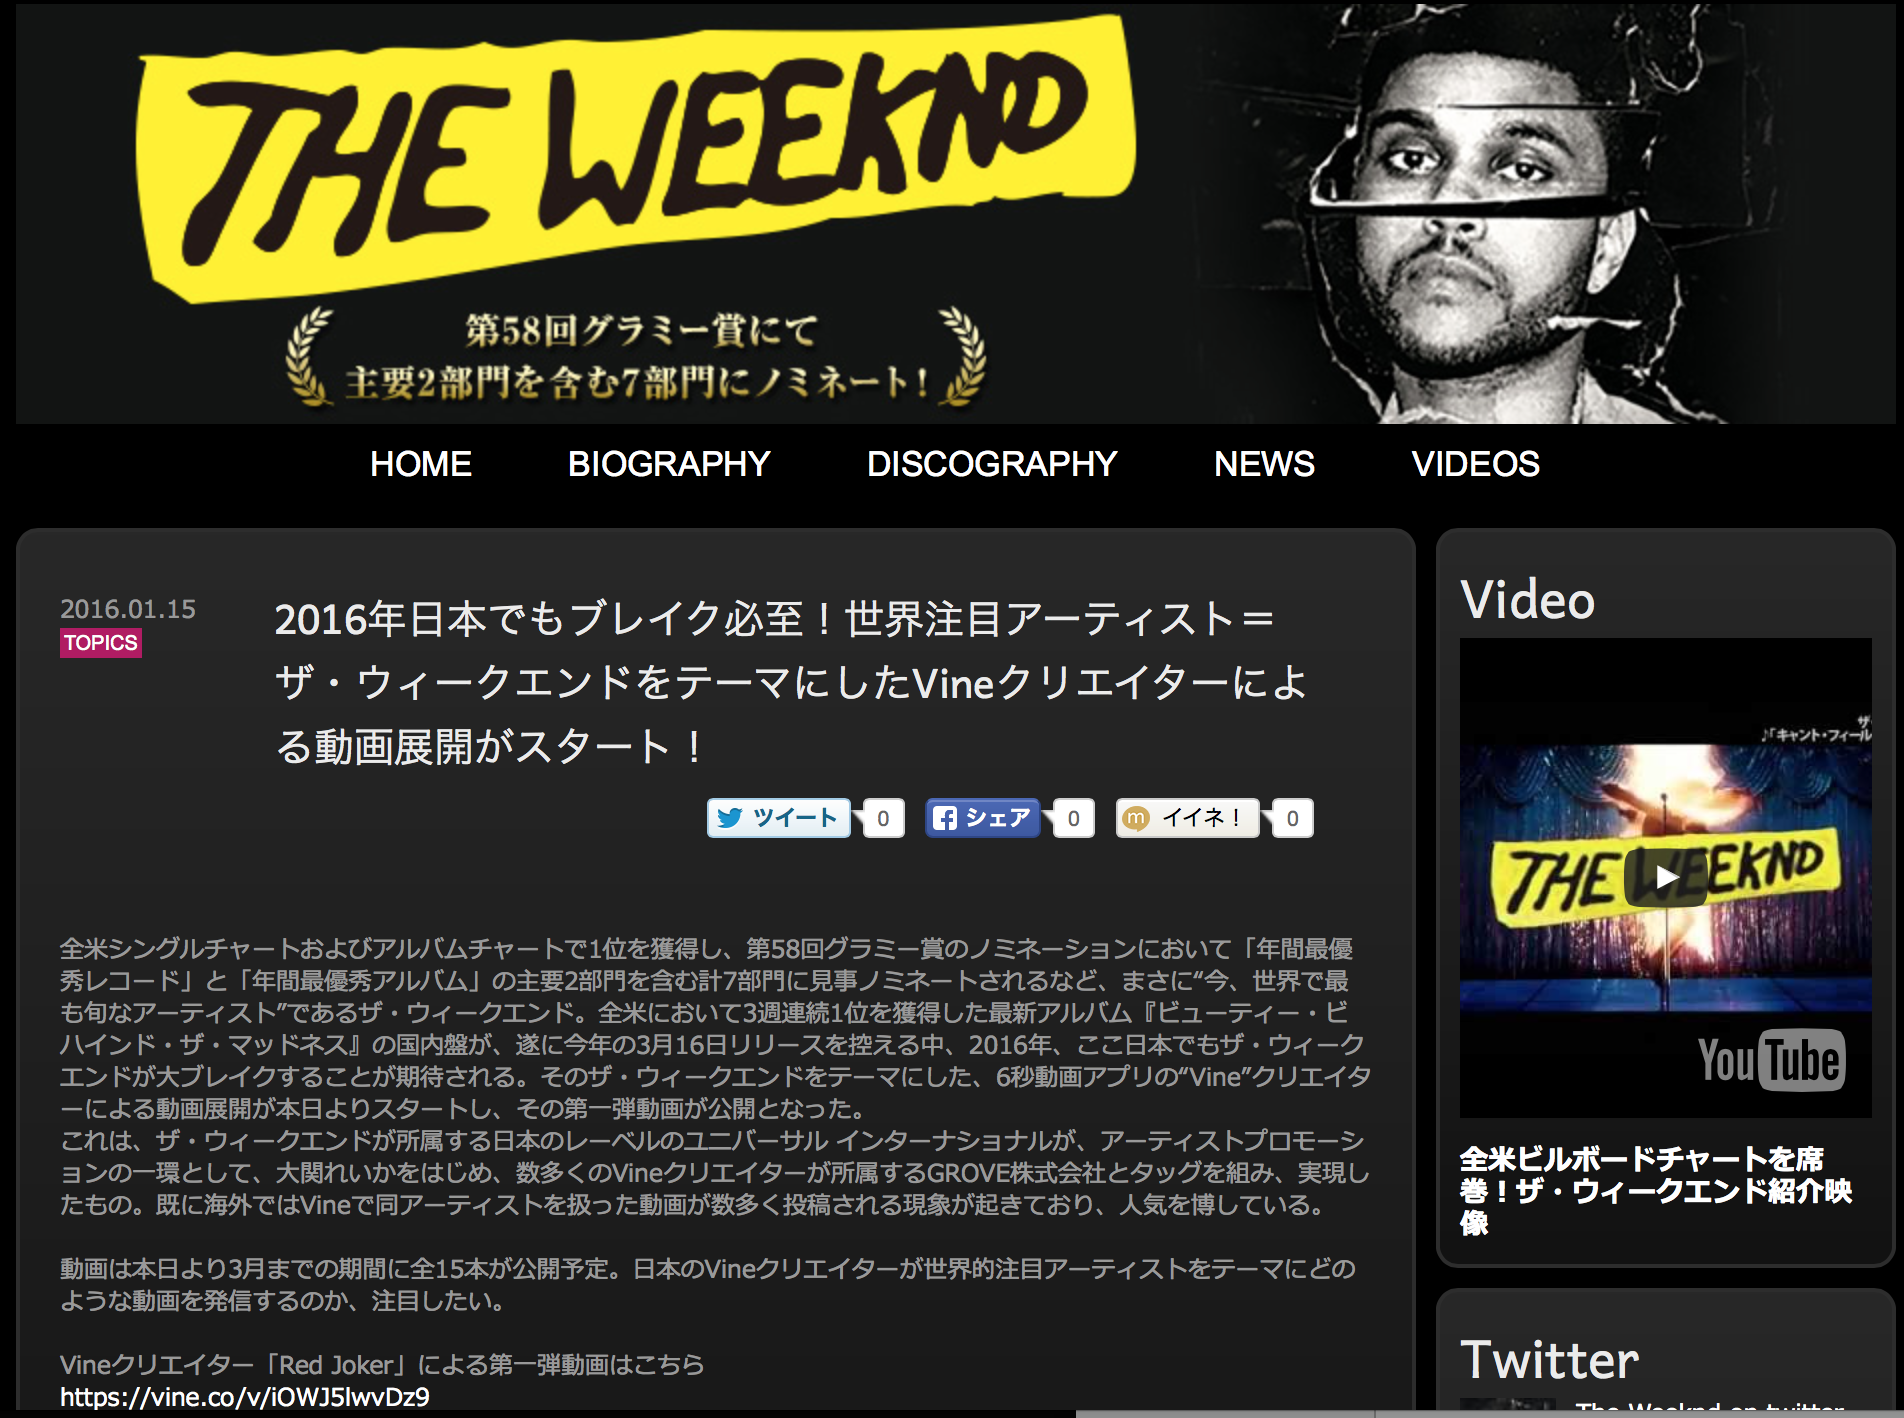 世界で最も旬なアーティスト The Weekndの日本盤プロモーションに参加 Grove株式会社